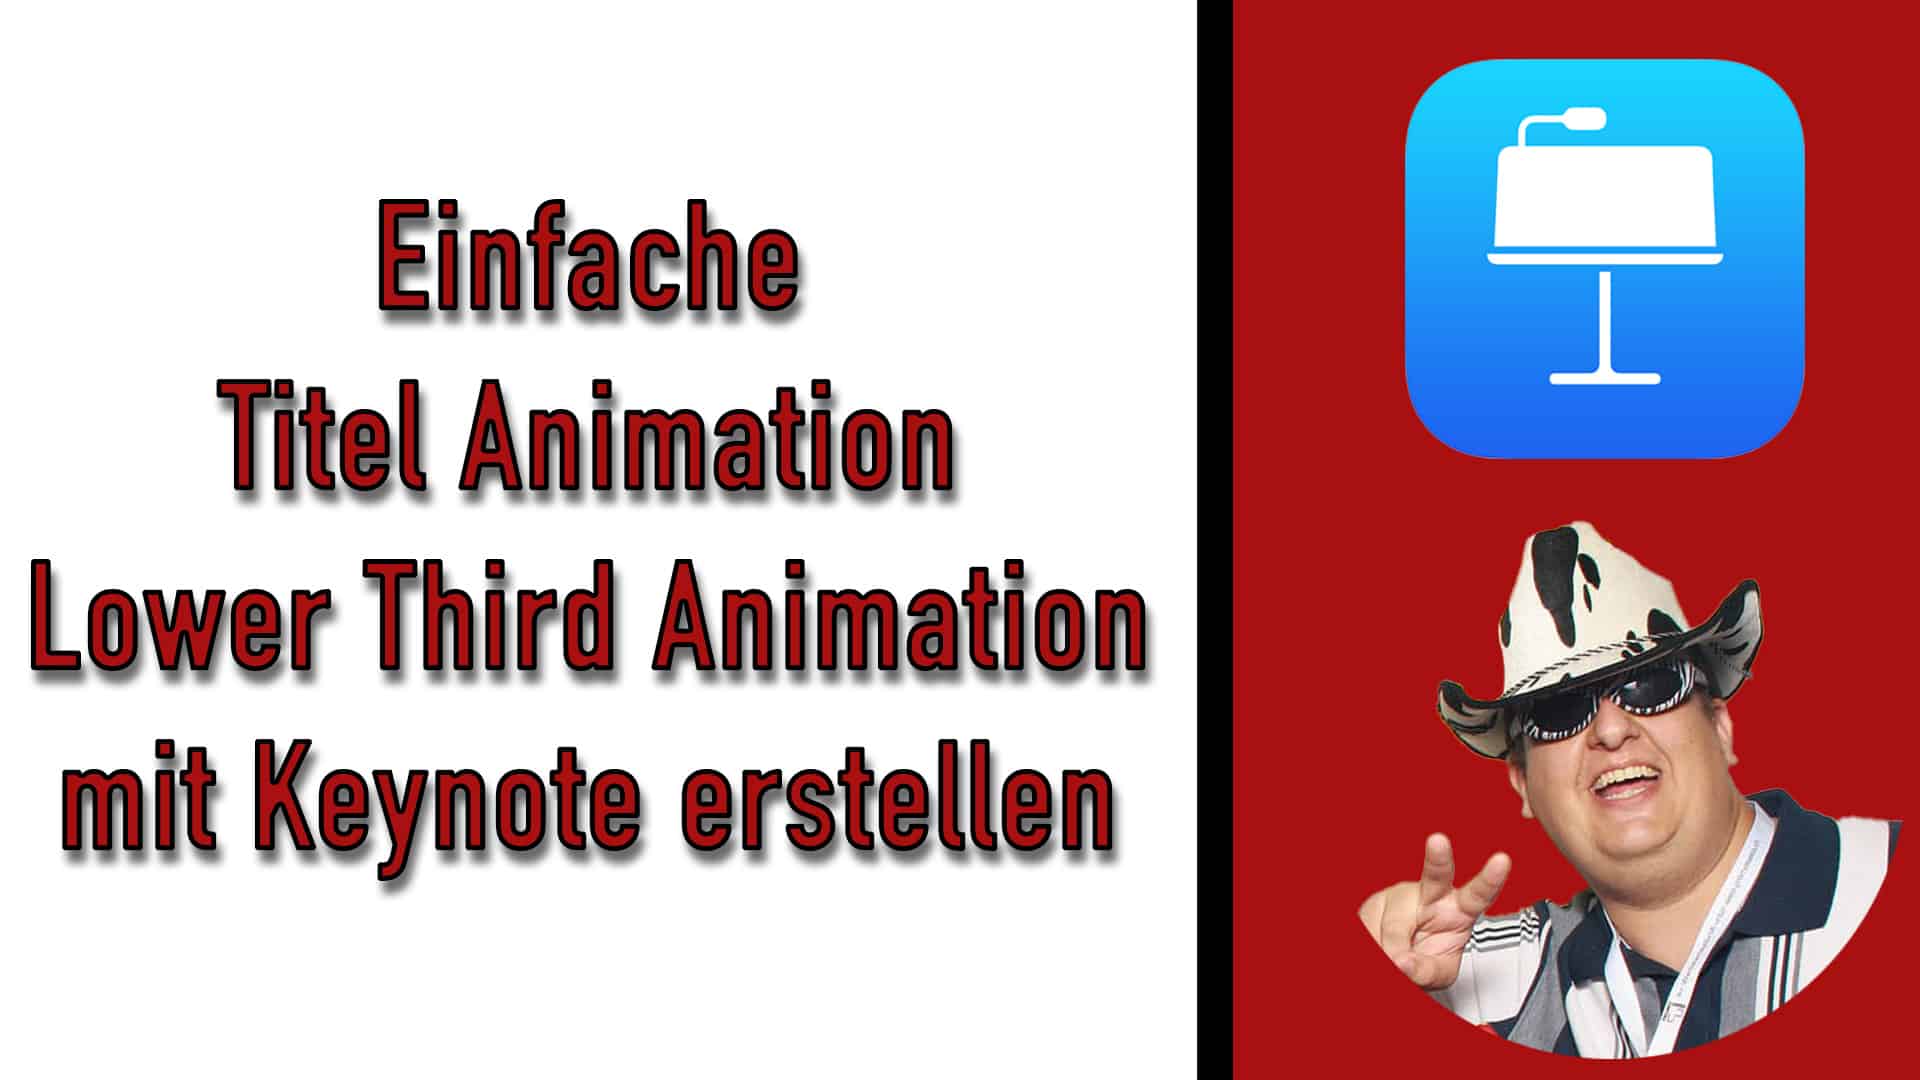 Einfache Titel Animation (Lower Third Animation) mit Keynote erstellen [Für Live Stream oder Videos]